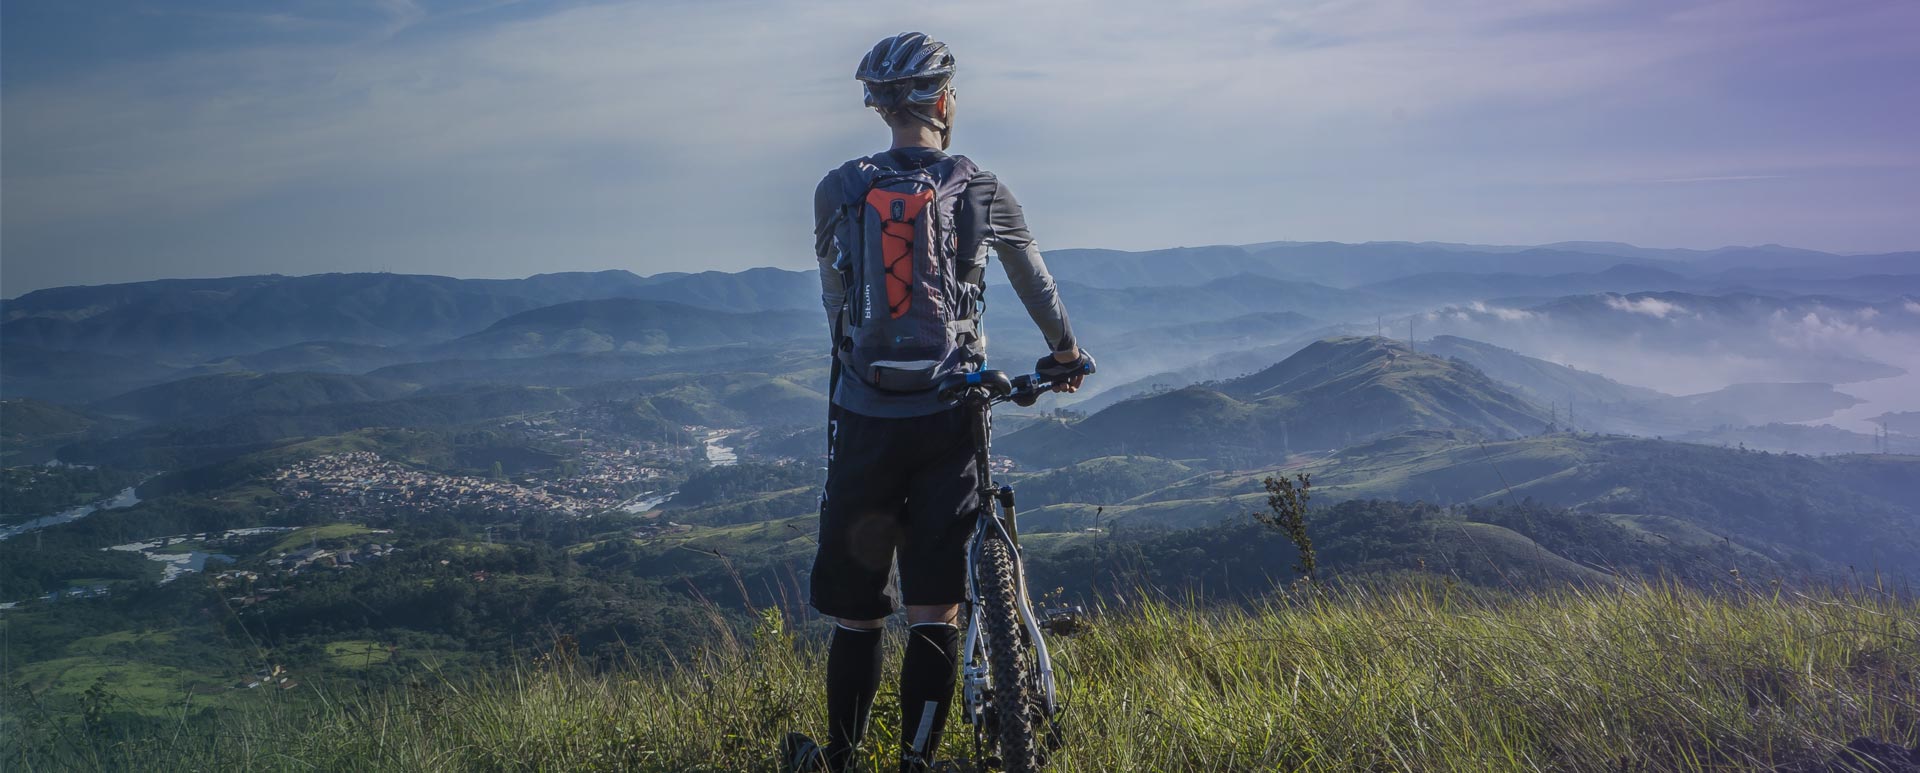 mountain-bike-per-iniziare-consigli